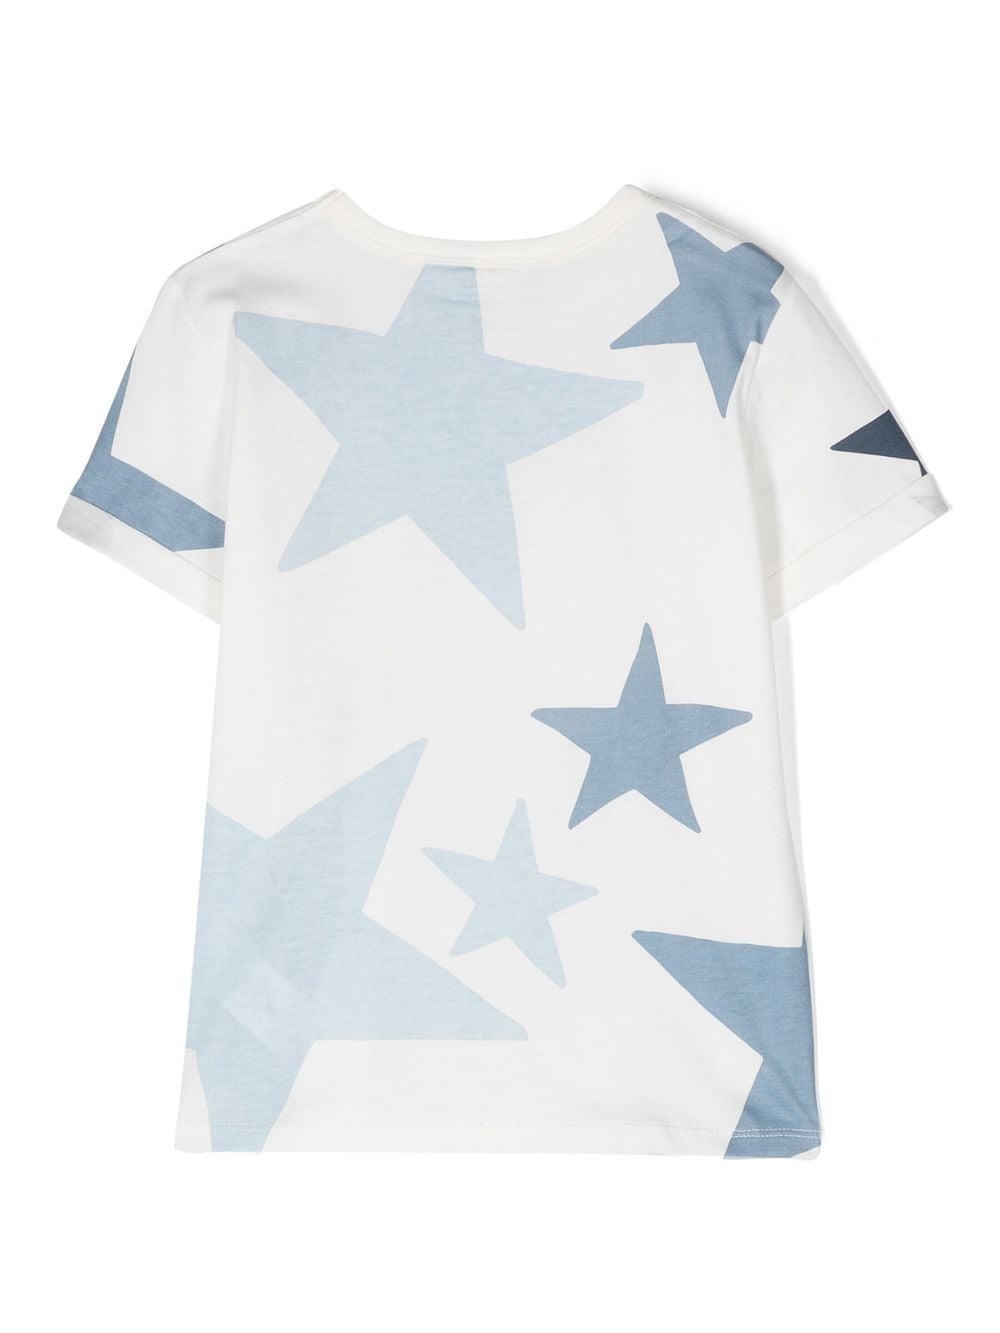 T-shirt a maniche corte con stampa di stelle<br><br><br>